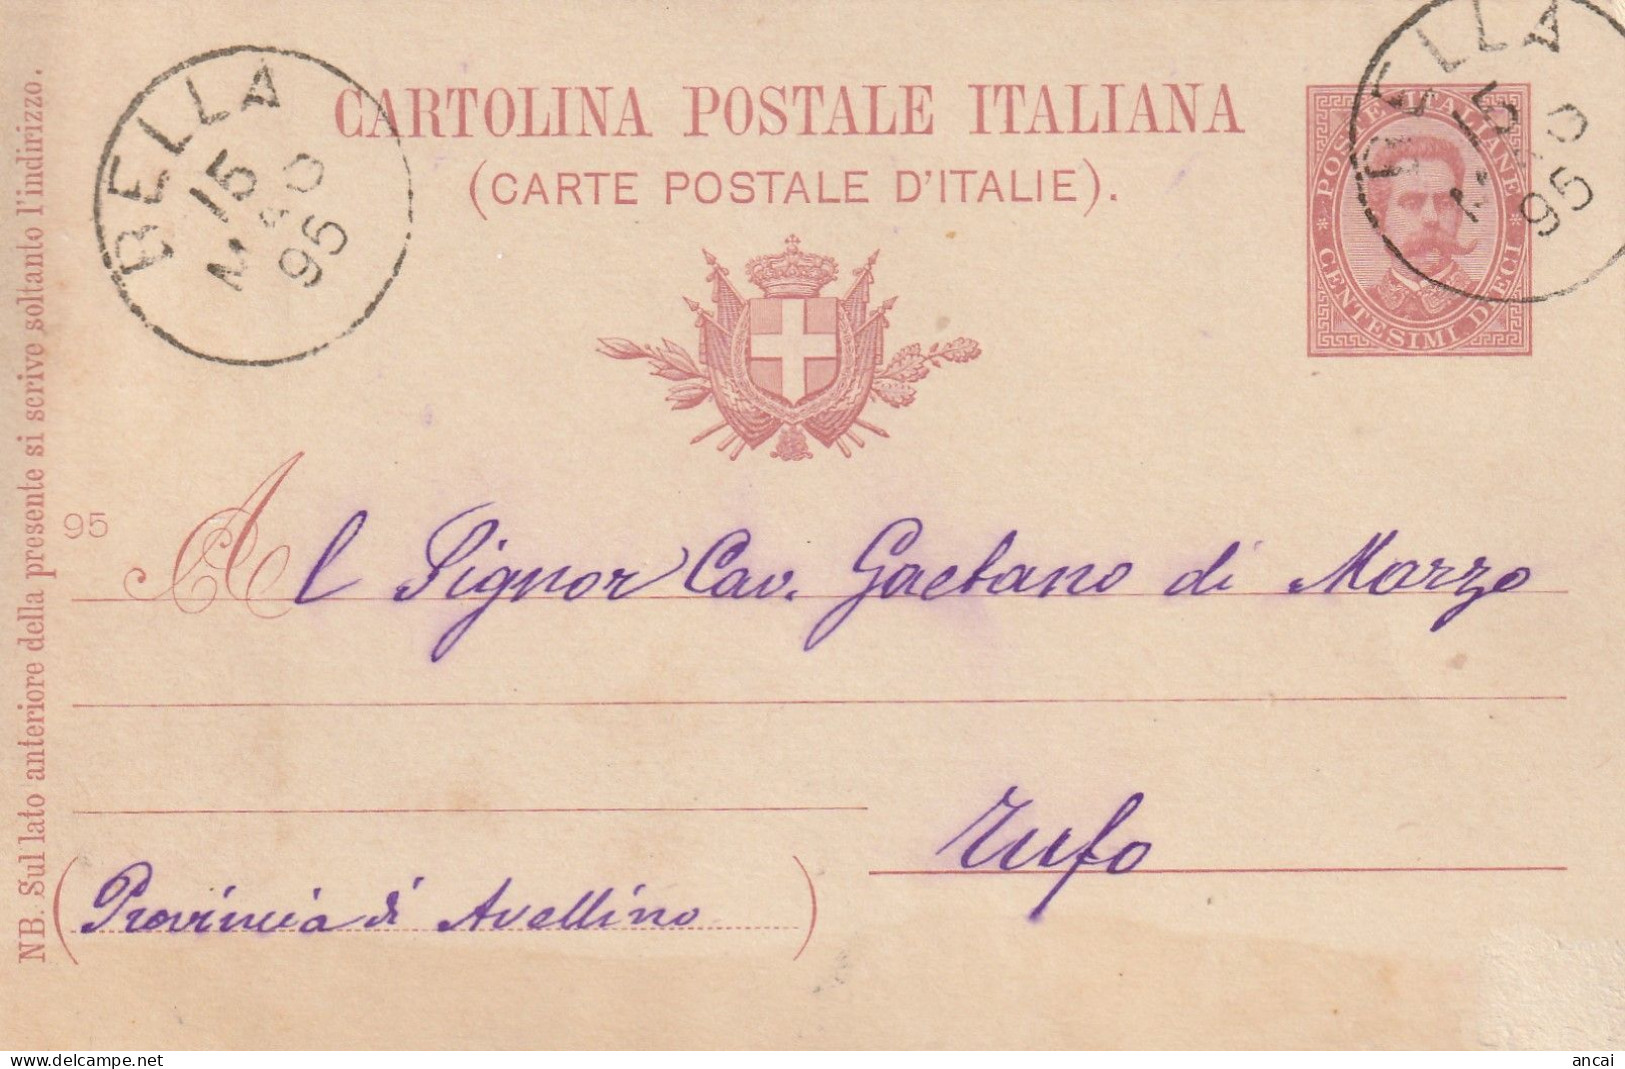 Italy. A212. BELLA.  1895. Annullo Grande Cerchio BELLA, Su Cartolina Postale - Marcofilie